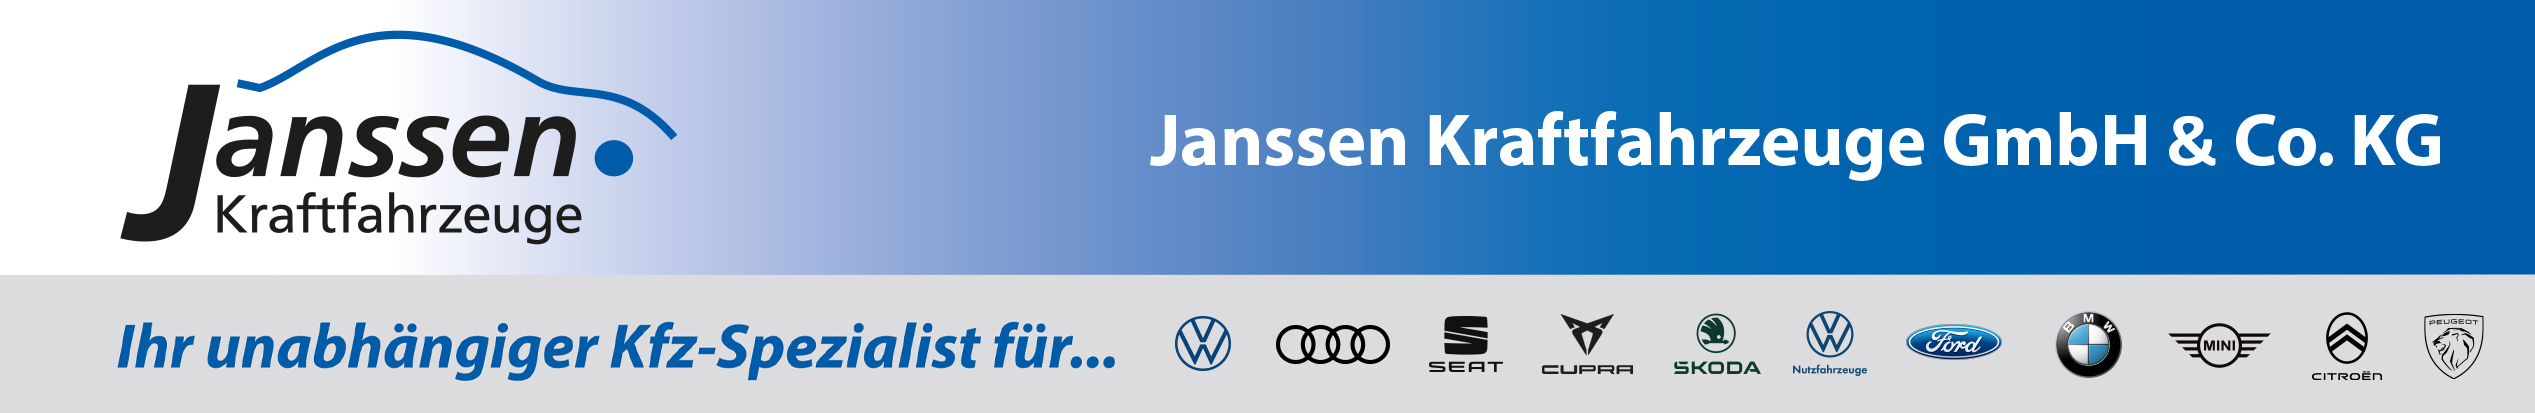 Janssen header 2020